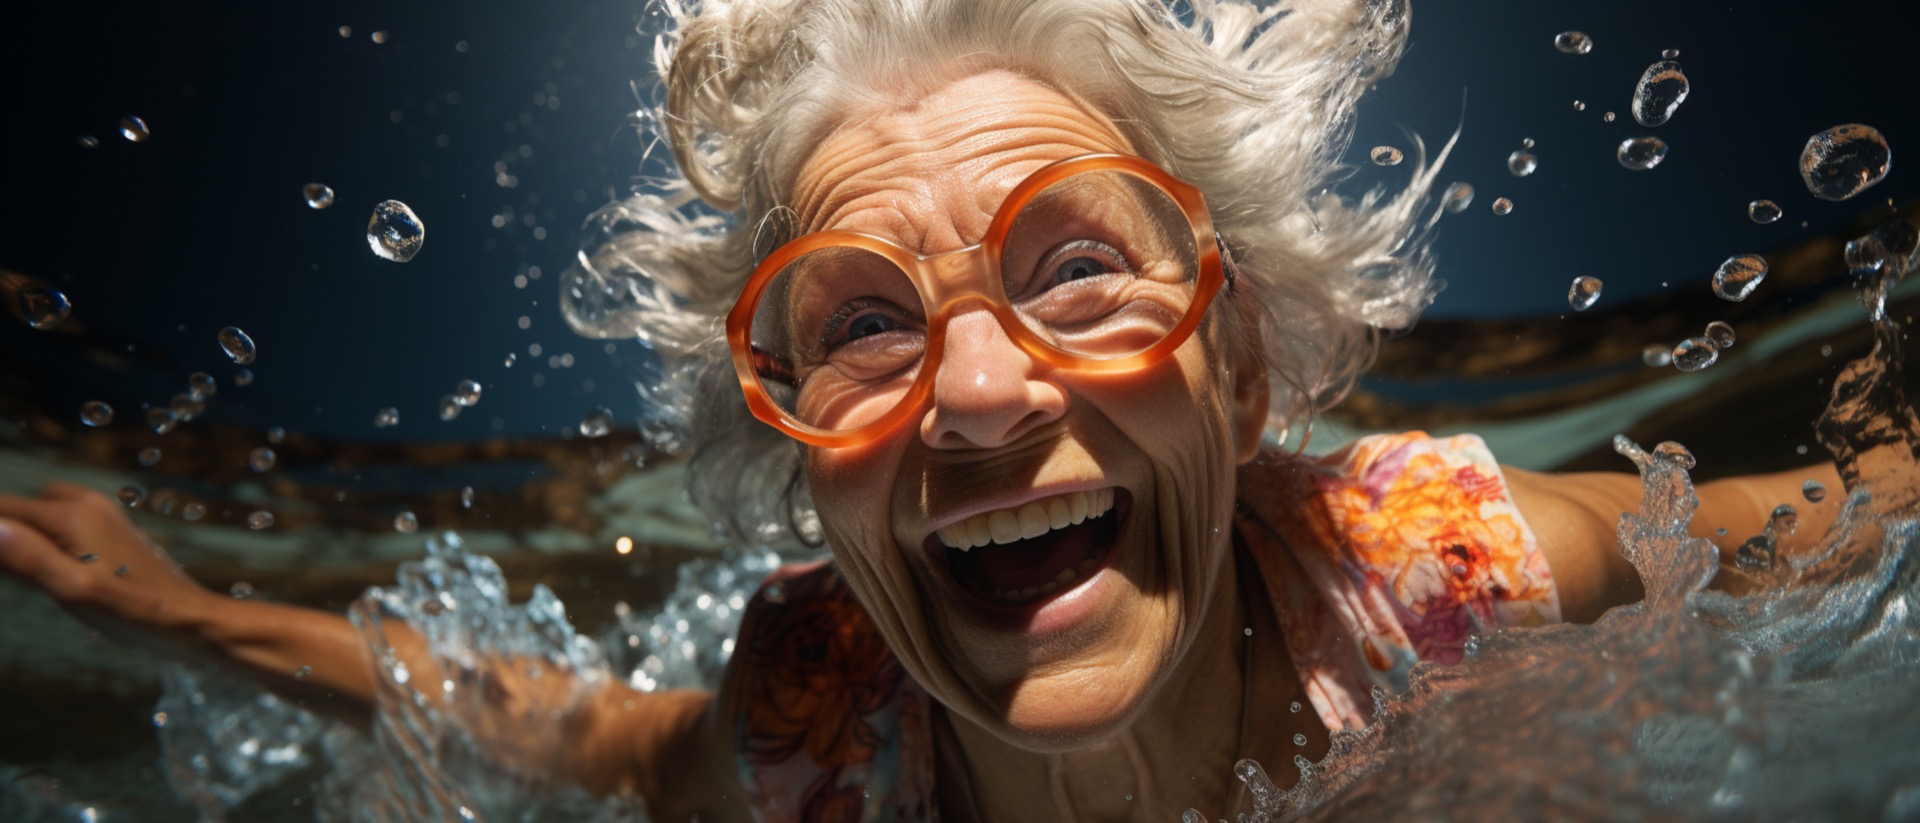 Les personnes dont l’âge biologique est plus élevé ont davantage de risques de développer une maladie liée à l’âge dans le futur. © PhotoArtBC, Adobe Stock